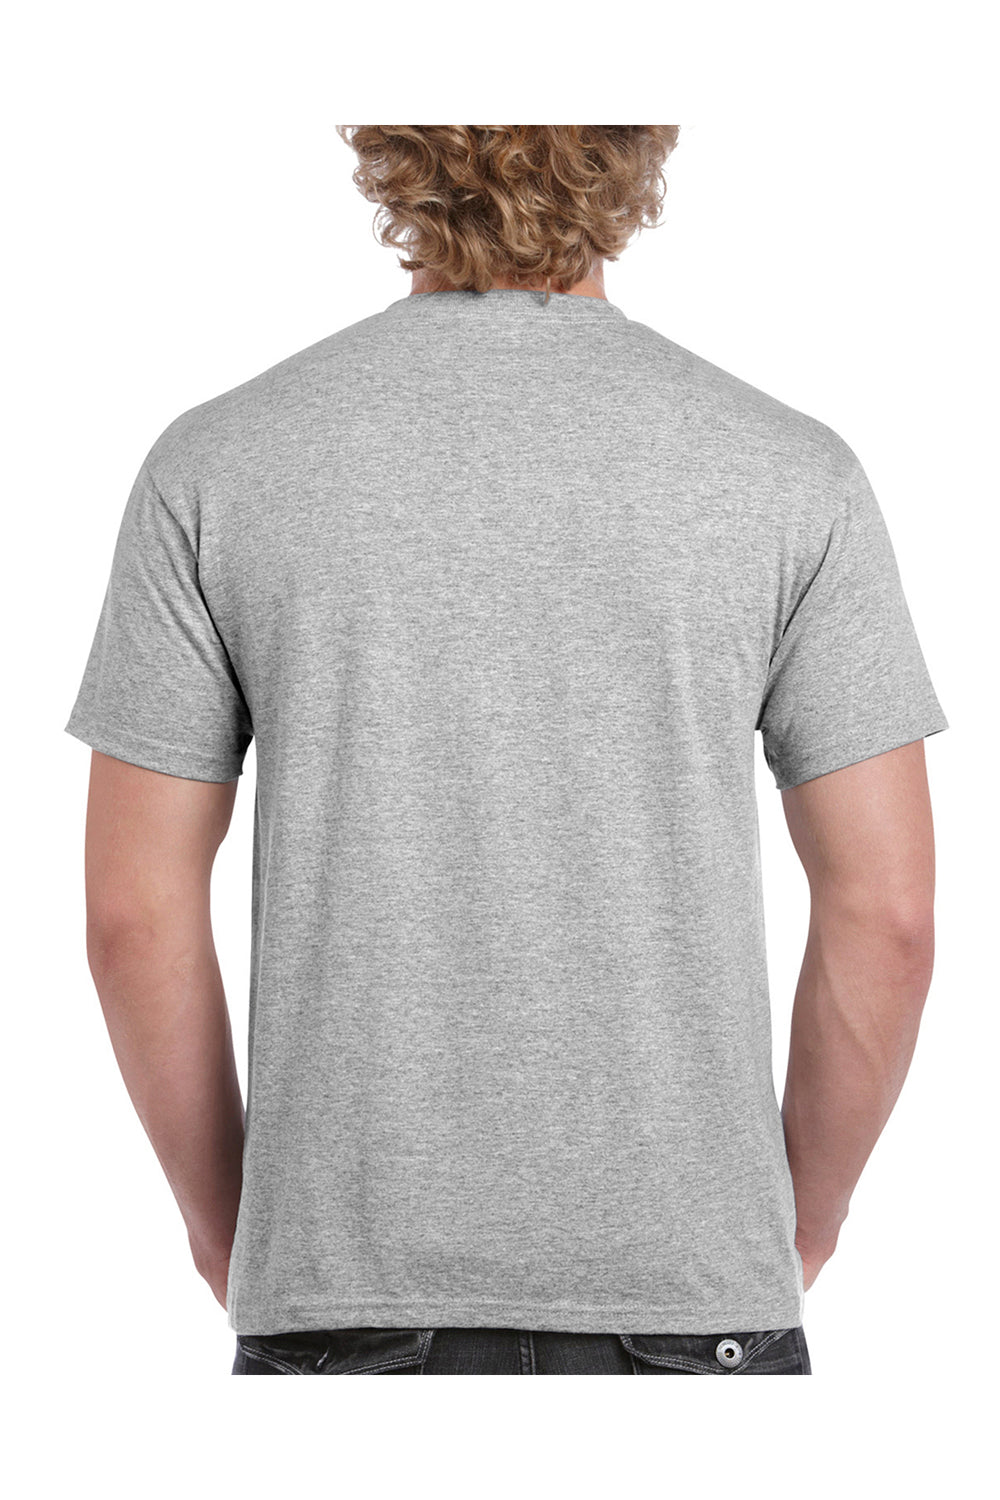 Gildan Cleveland Cavaliers T-Shirt Sport Grey S